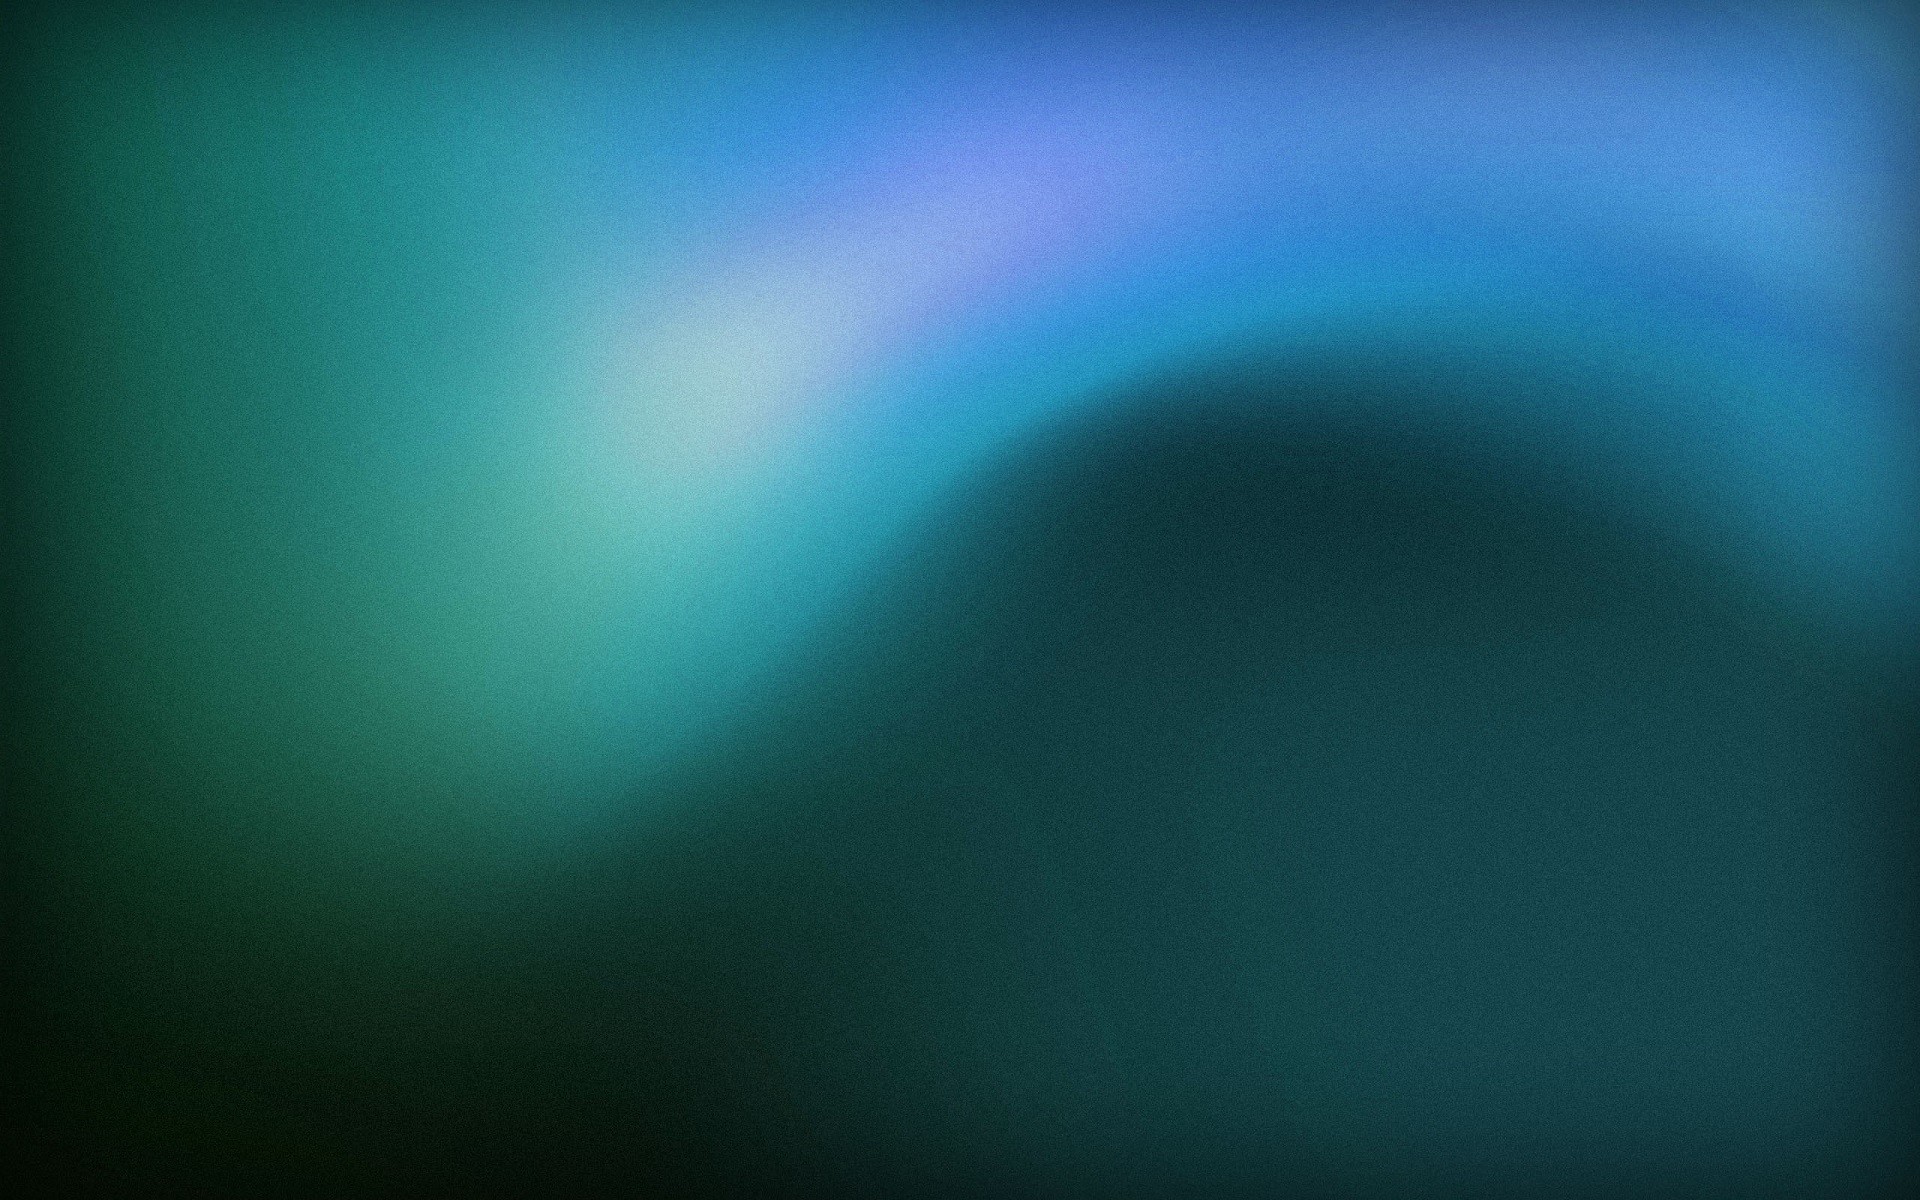 ubuntu gnome fond d'écran,bleu,vert,turquoise,ciel,aqua